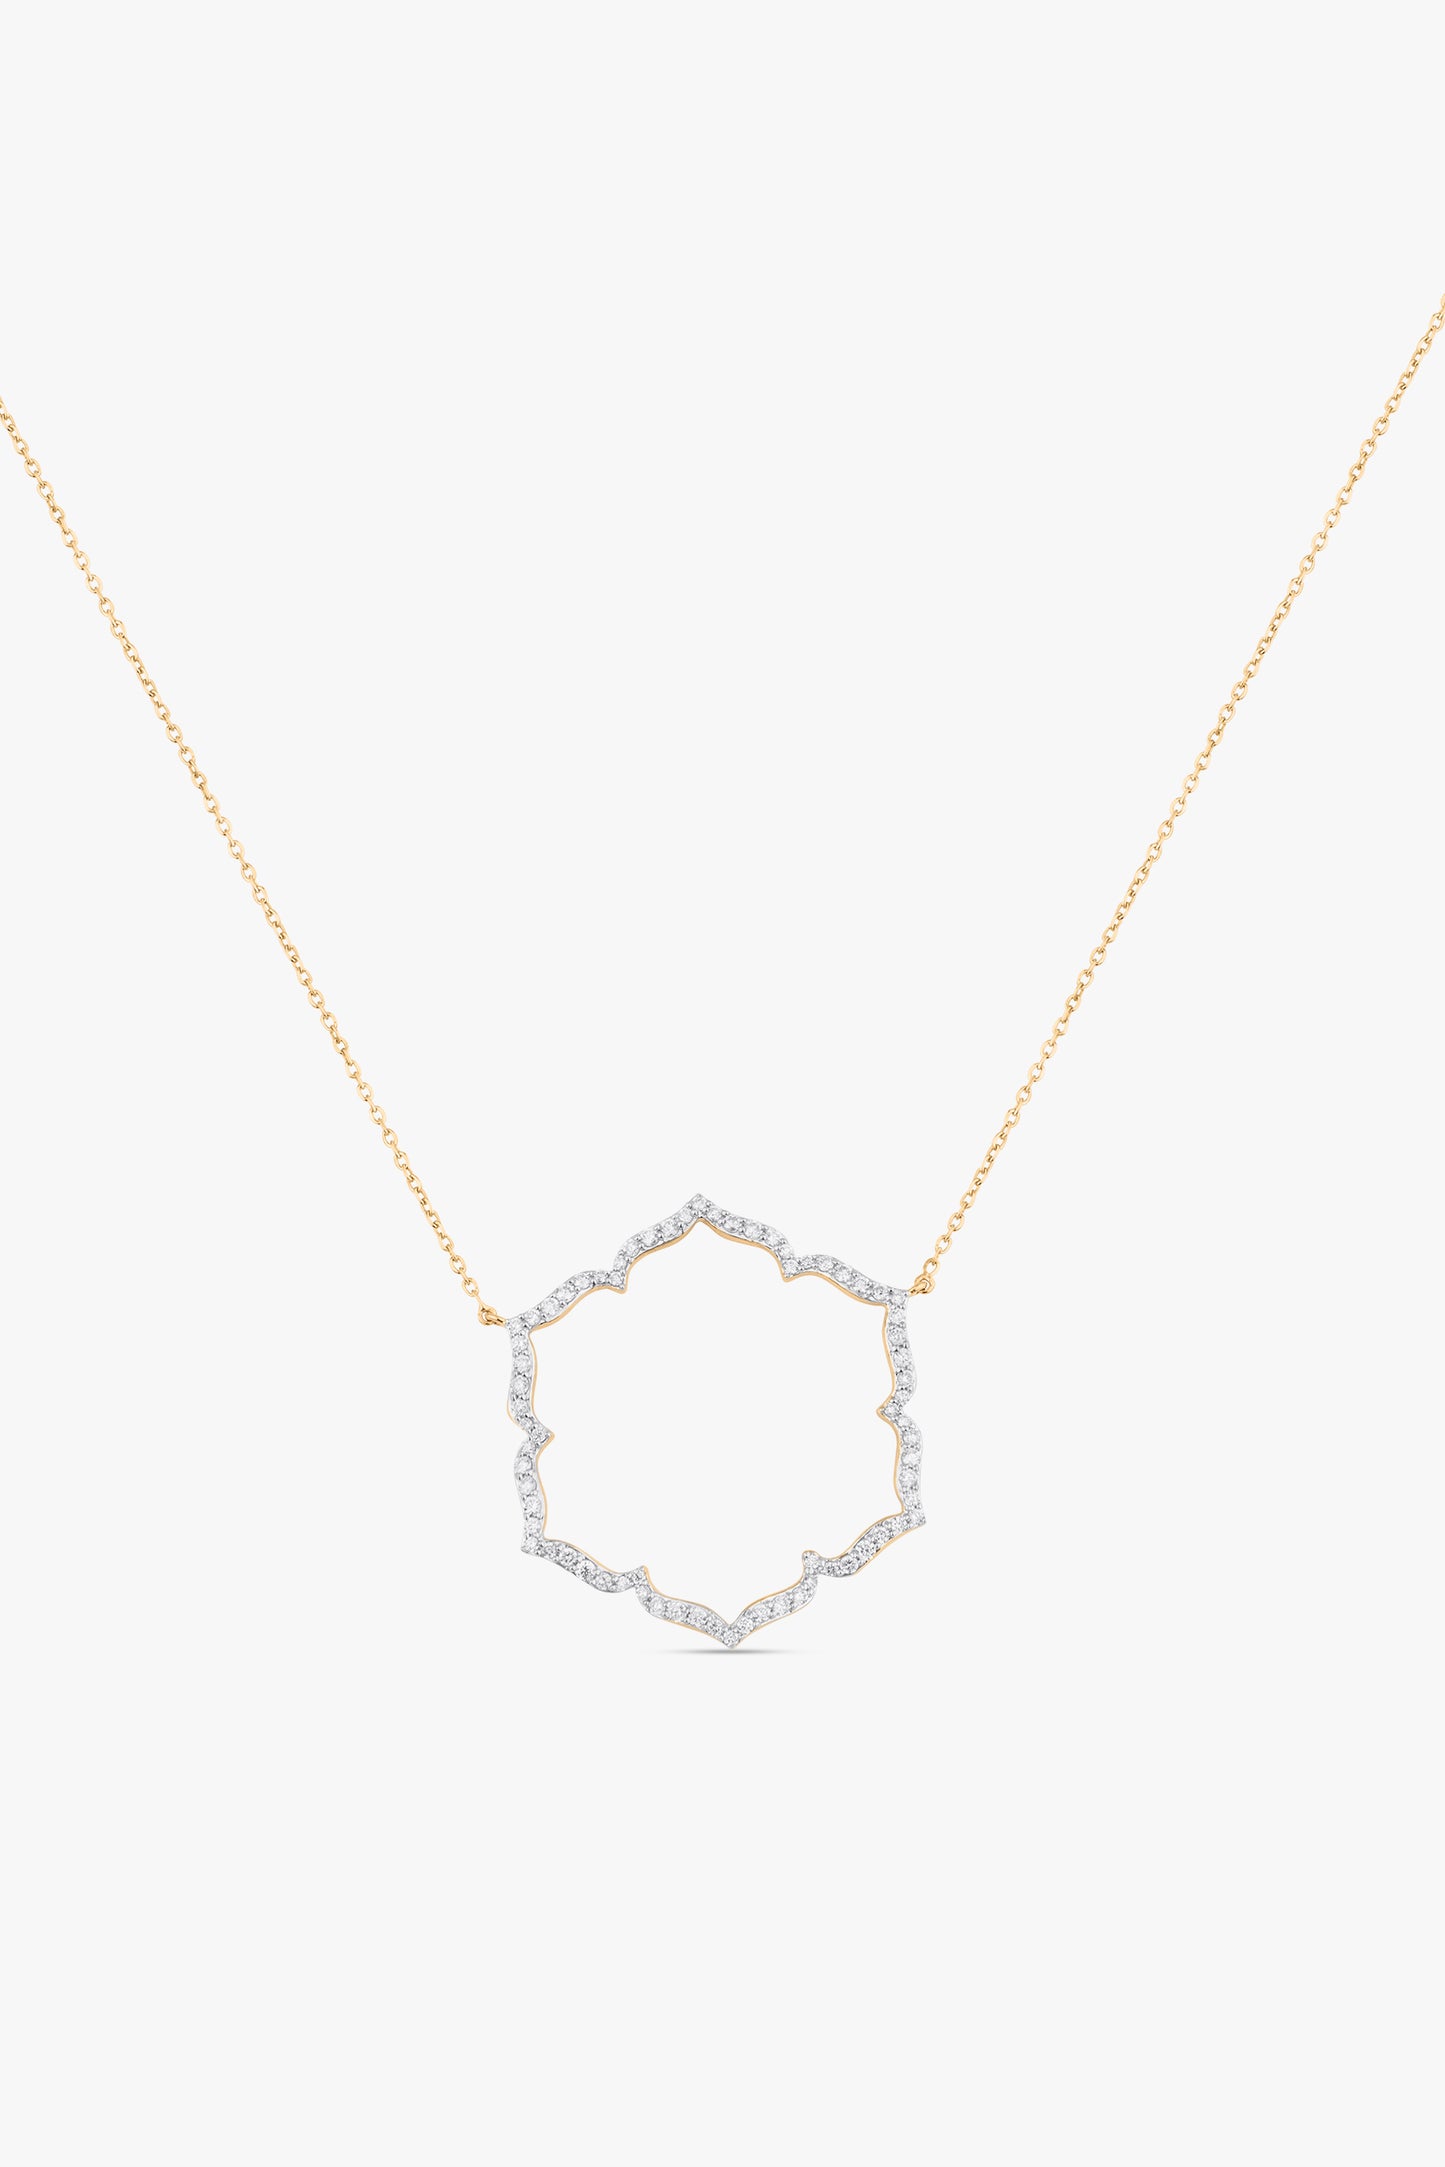 Svadhisthana Large Necklace